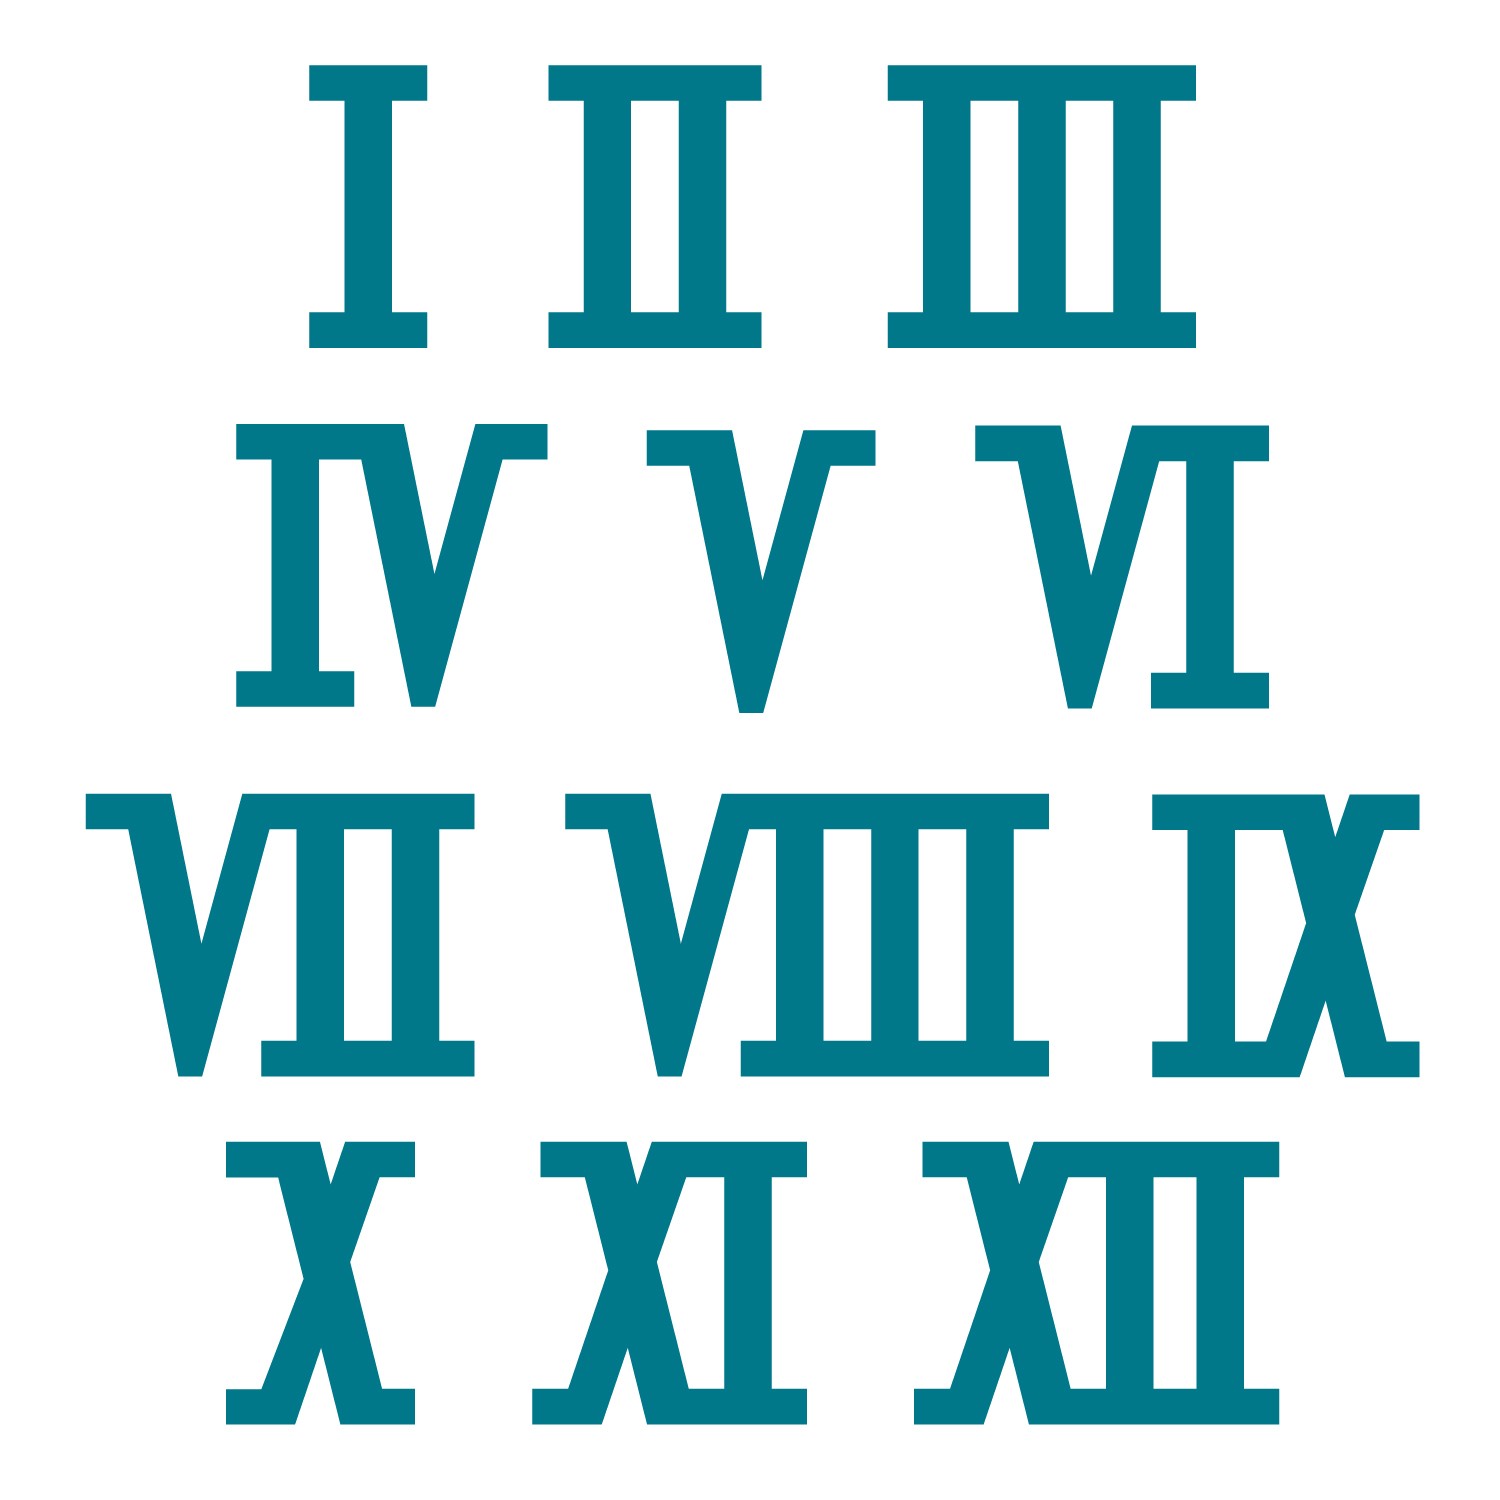 Convert Roman numerals to decimal using Java